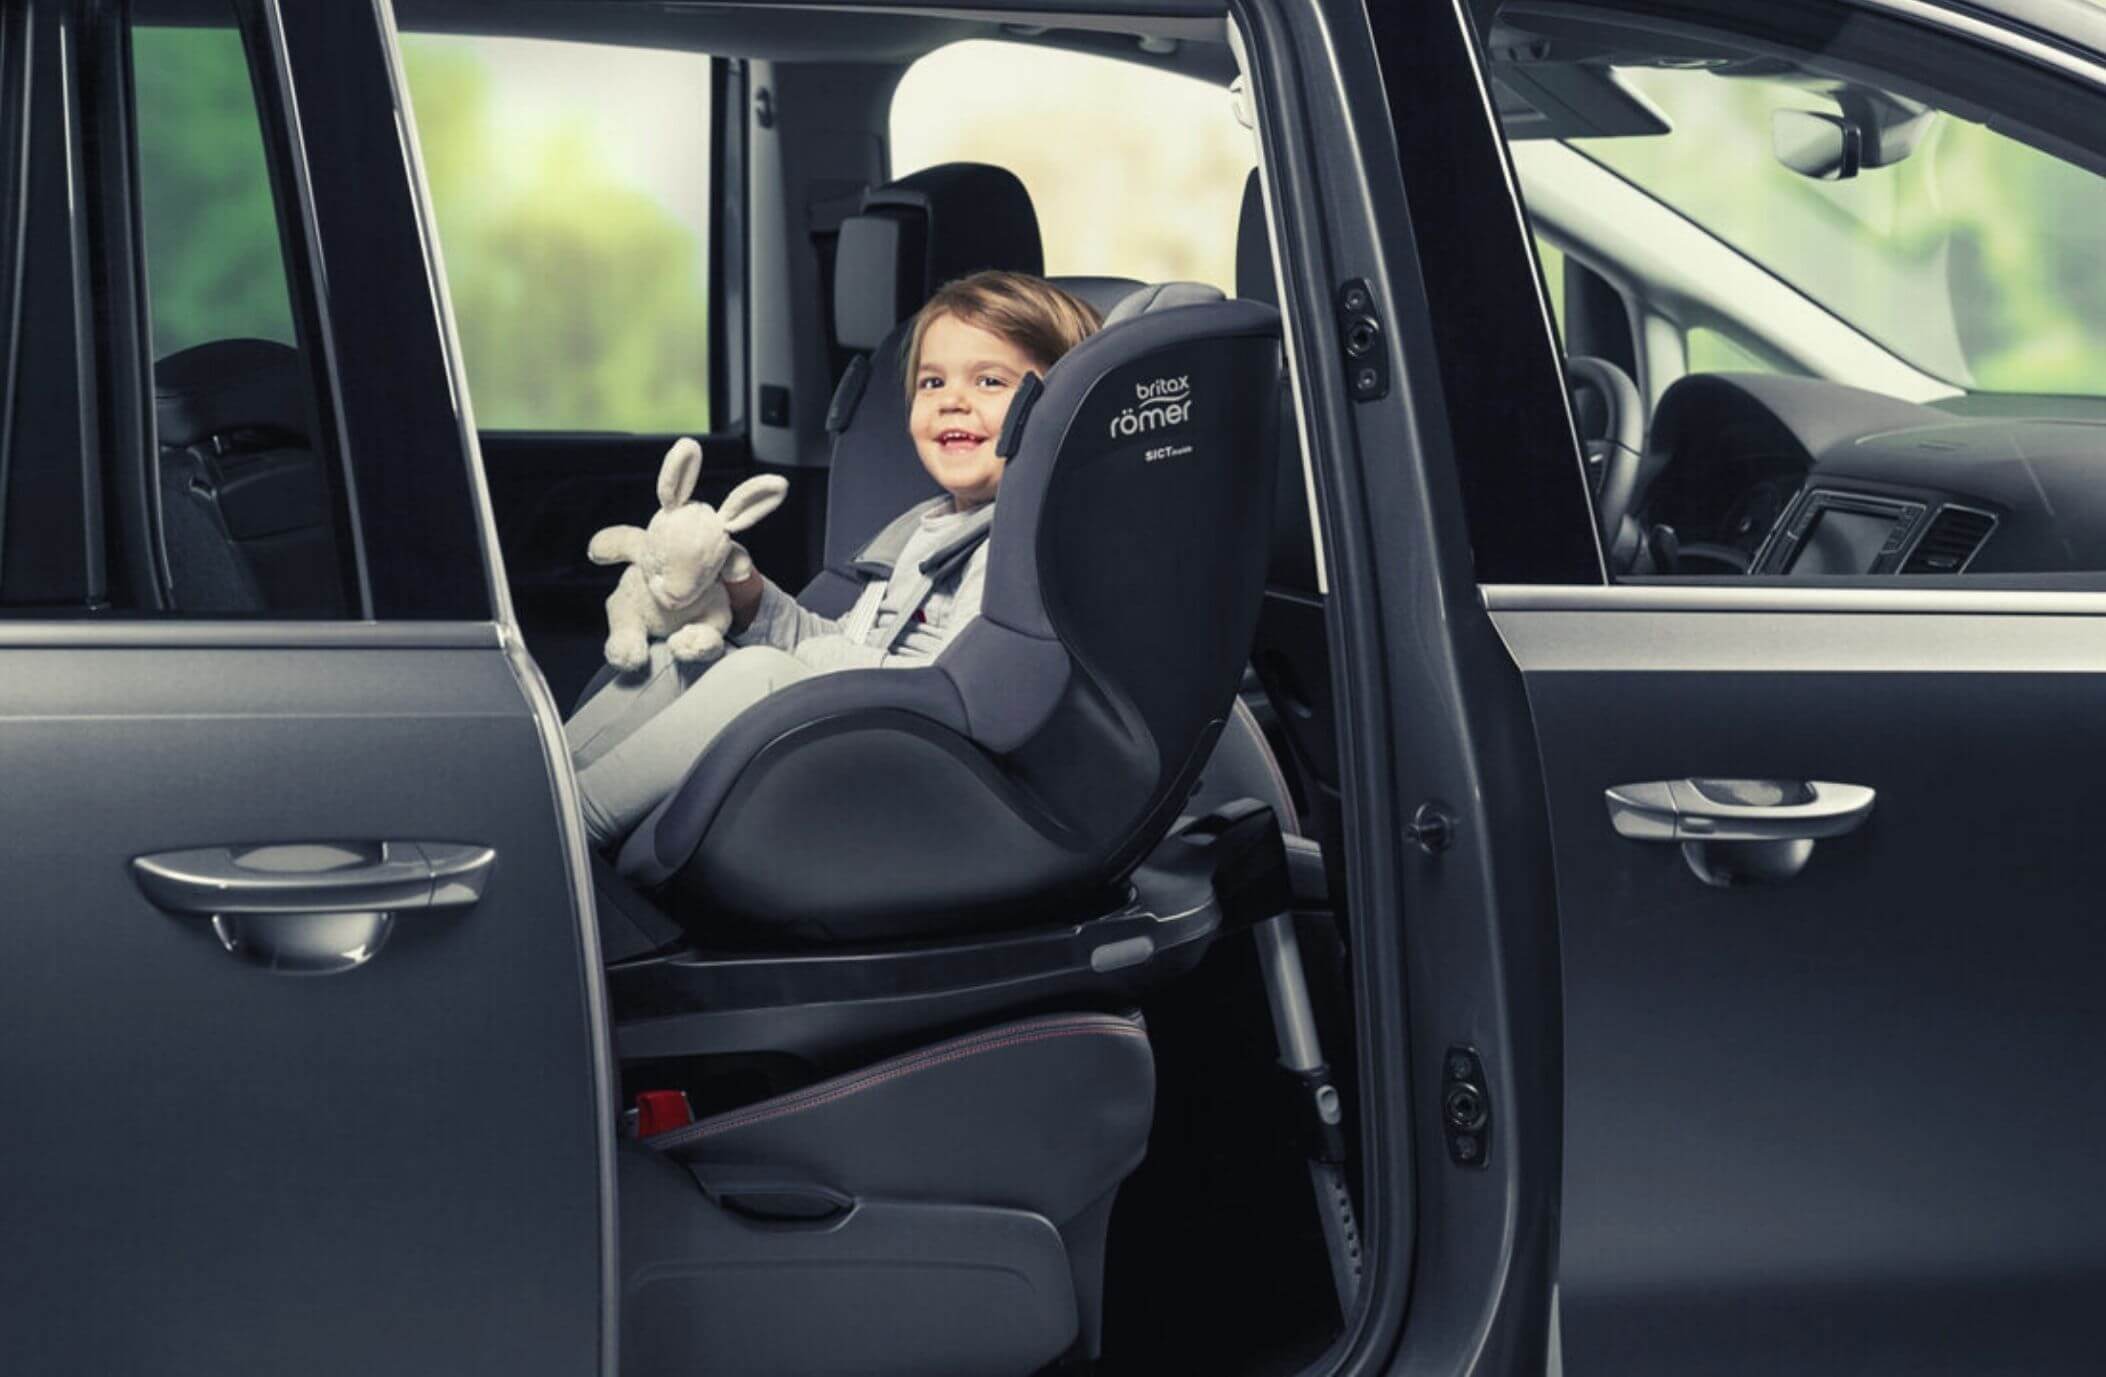 Housse été pour siège auto baby-safe 3 i-size / isense Britax